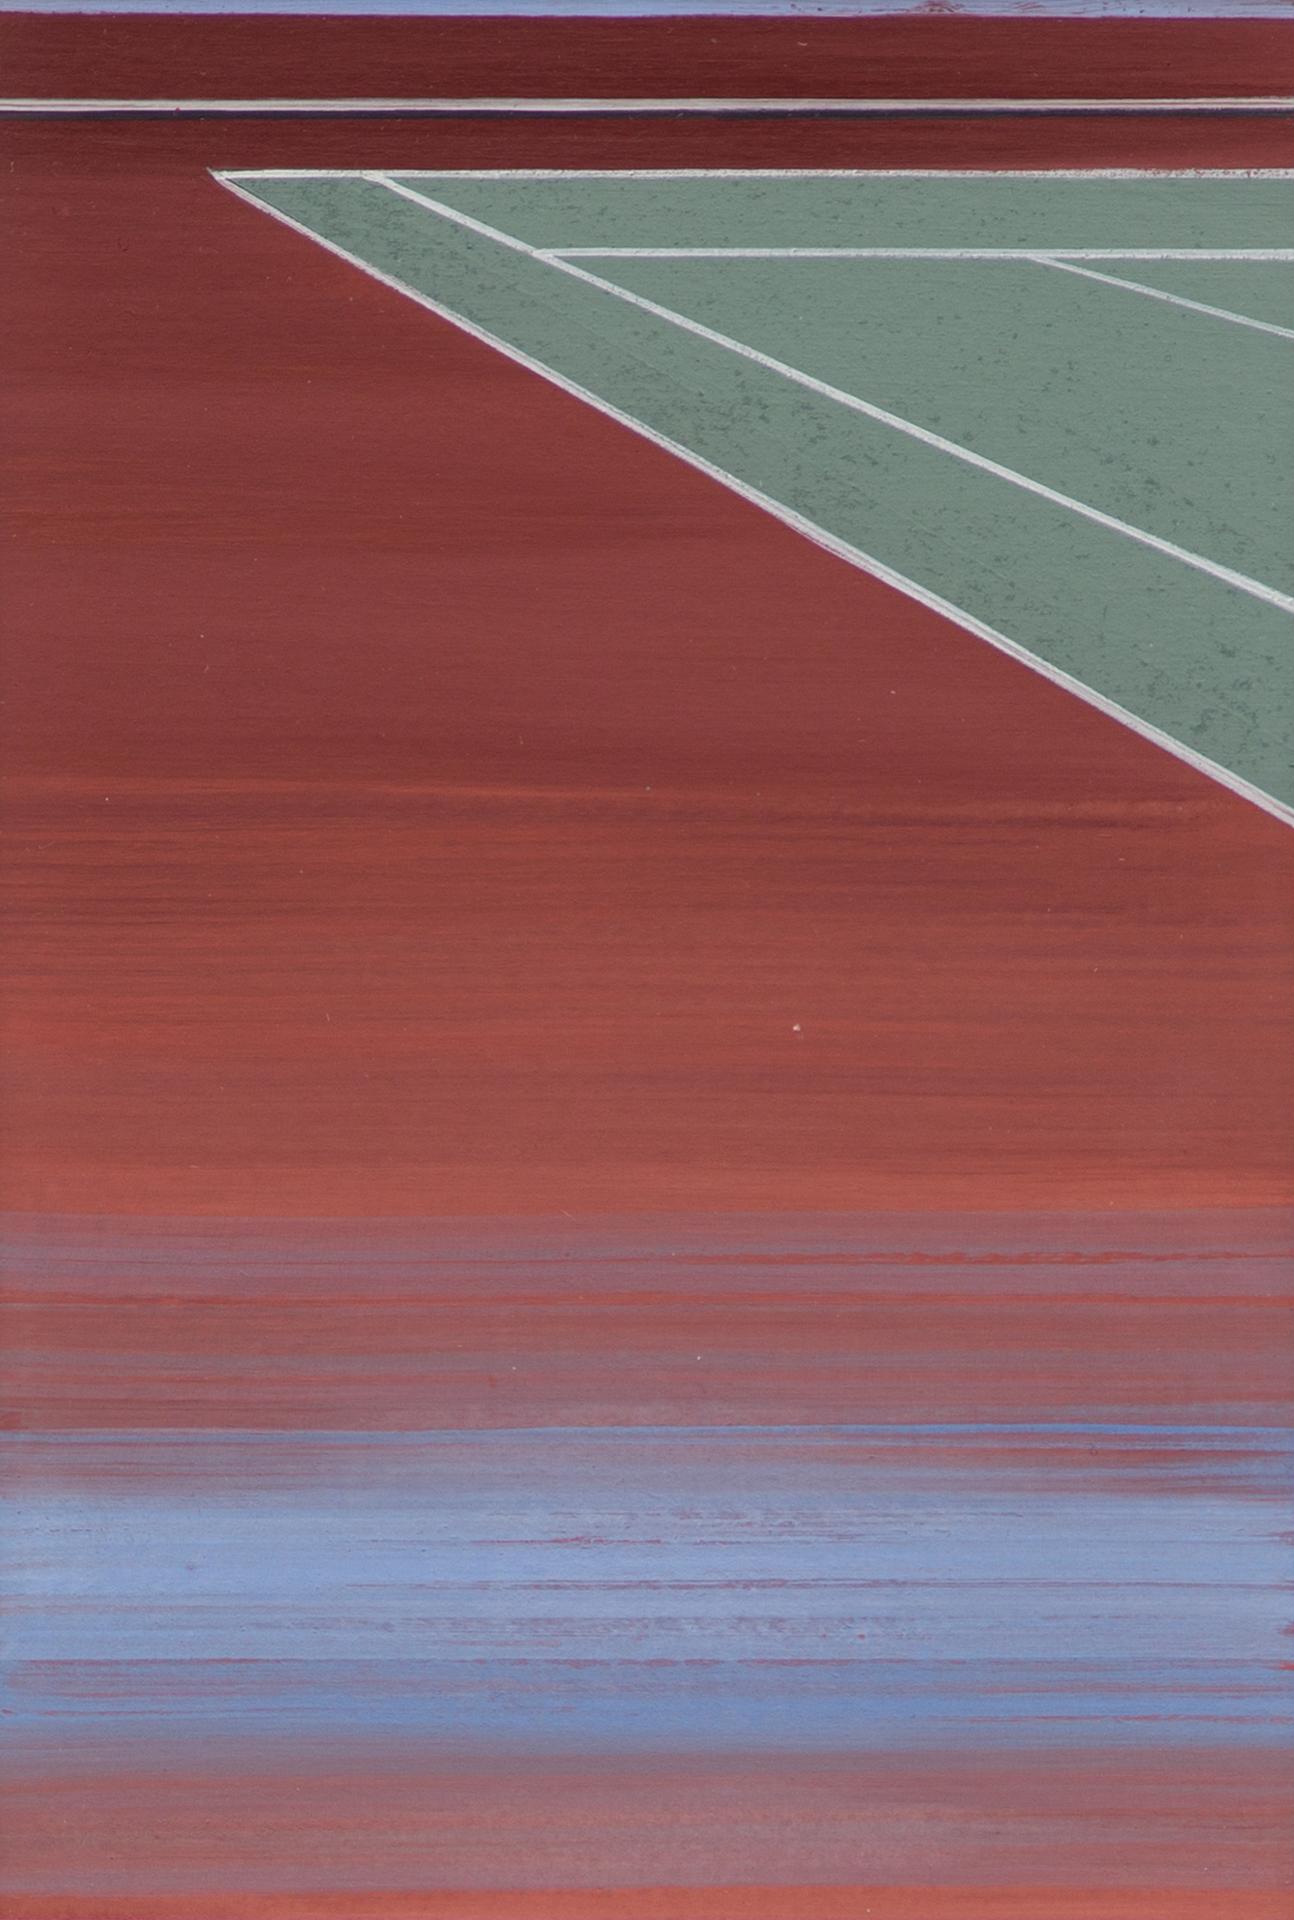 Pierre Dorion (1959) - Étude pour tennis II, 2006